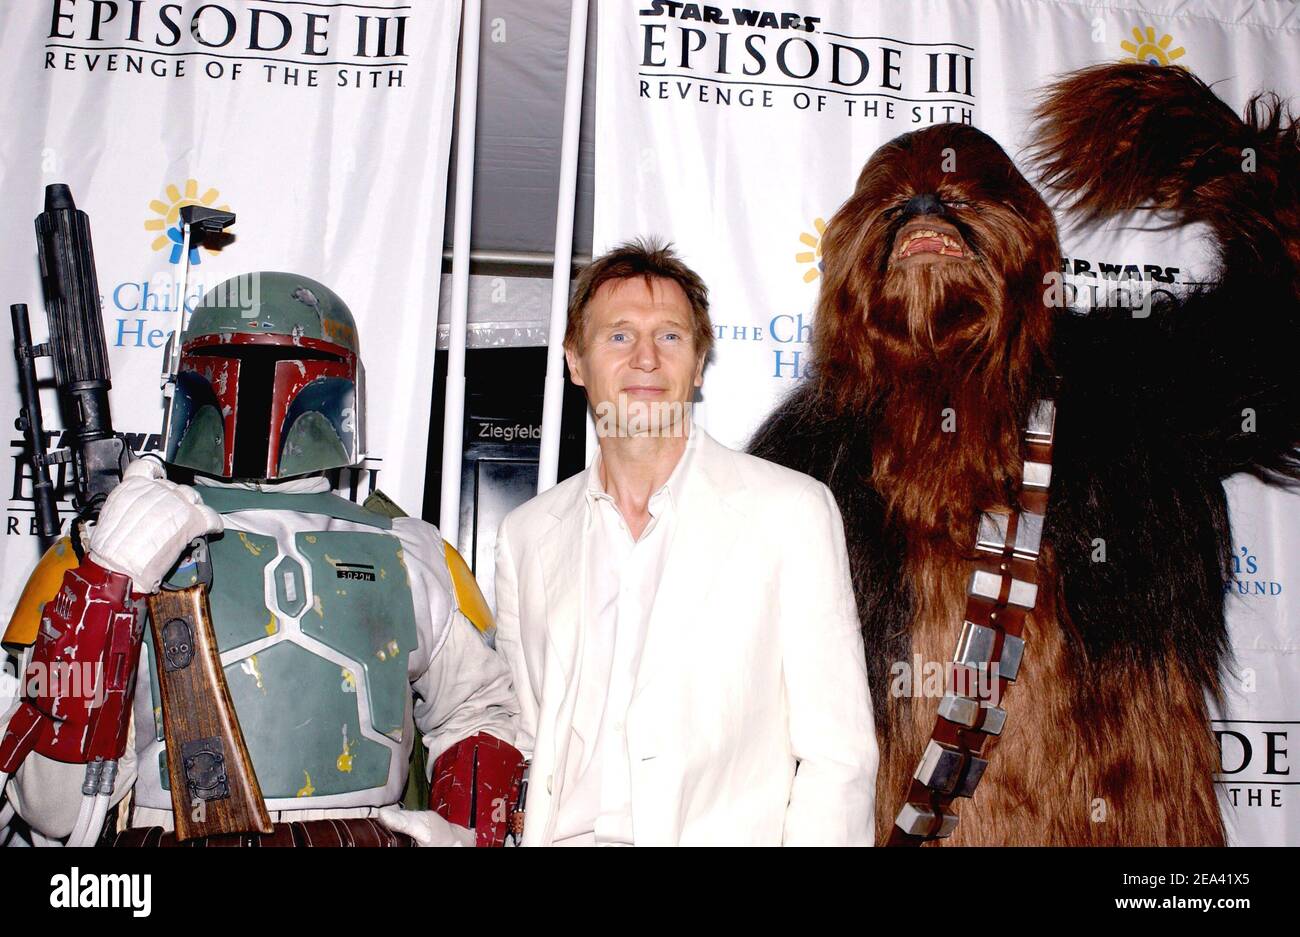 Bobba FET, Liam Neeson und Chewbacca posieren gemeinsam, als sie am Donnerstag, den 12. Mai 2005, zur Premiere von 'Star Wars Episode III: Revenge of the Sith' im Ziegfeld Theater in New York City, NY, USA, kommen. Foto von Nicolas Khayat/ABACA. Stockfoto